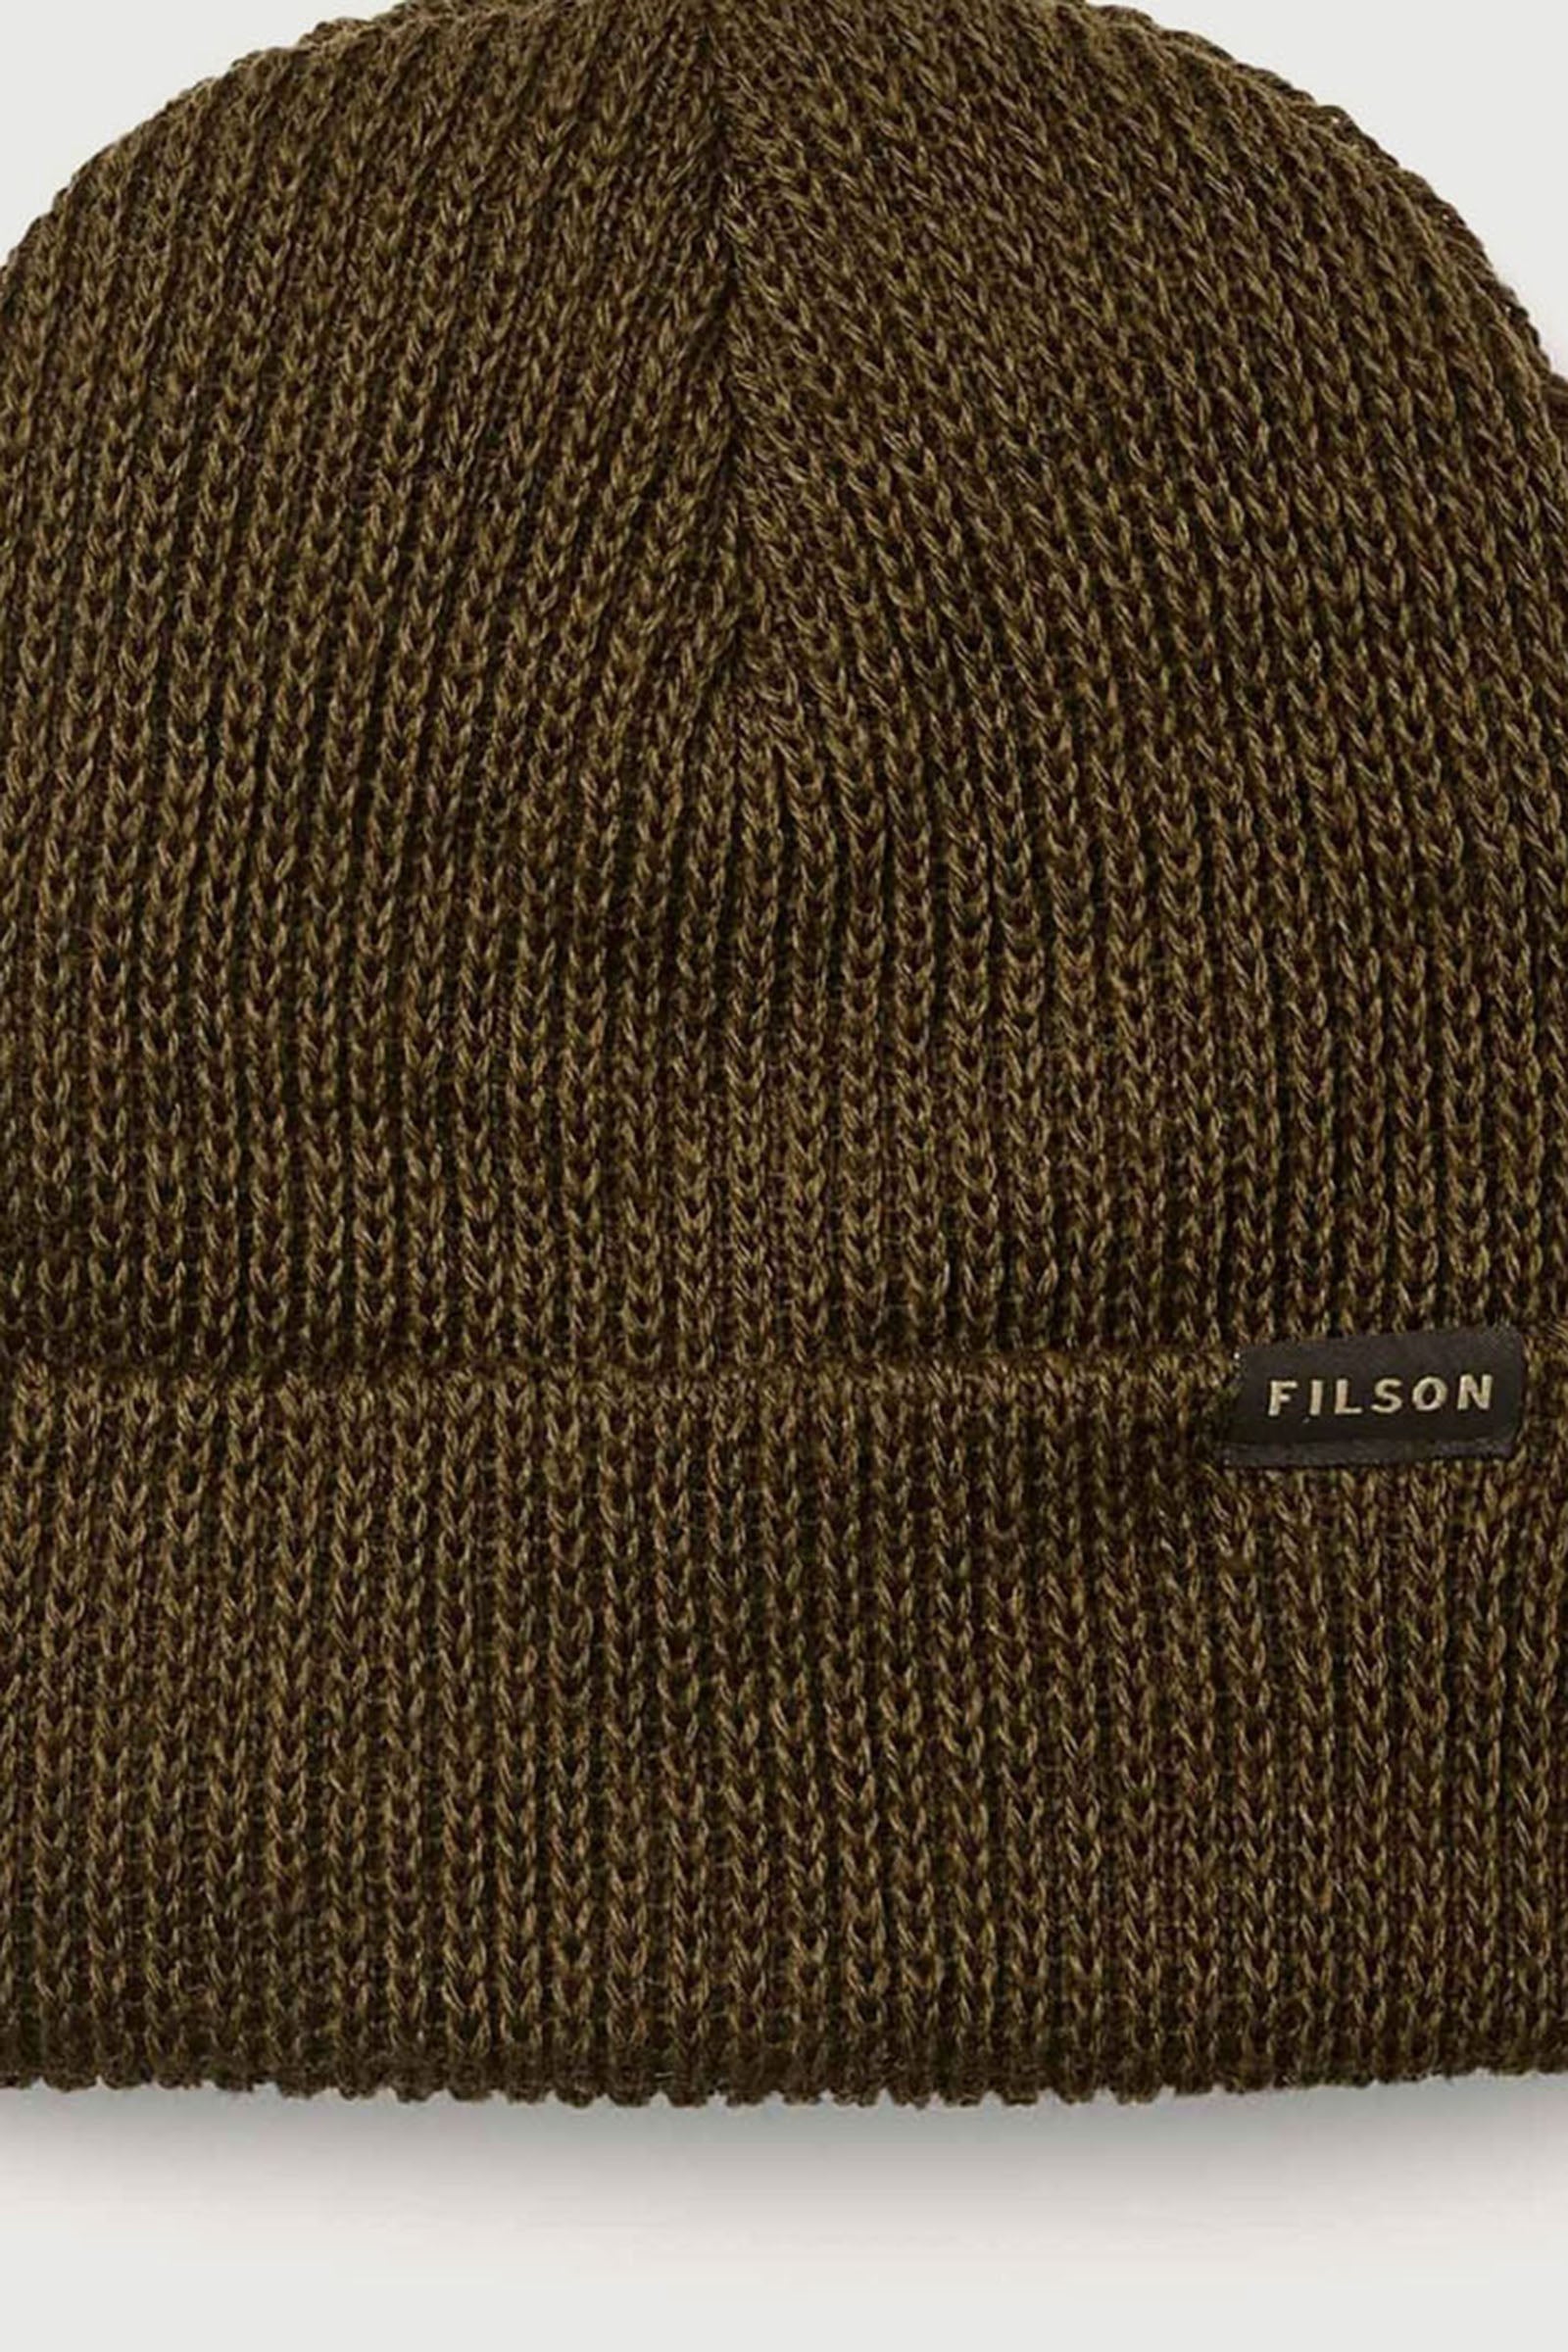 Filson Wool Watch Cap Beanie Verde Militare Unisex - 2